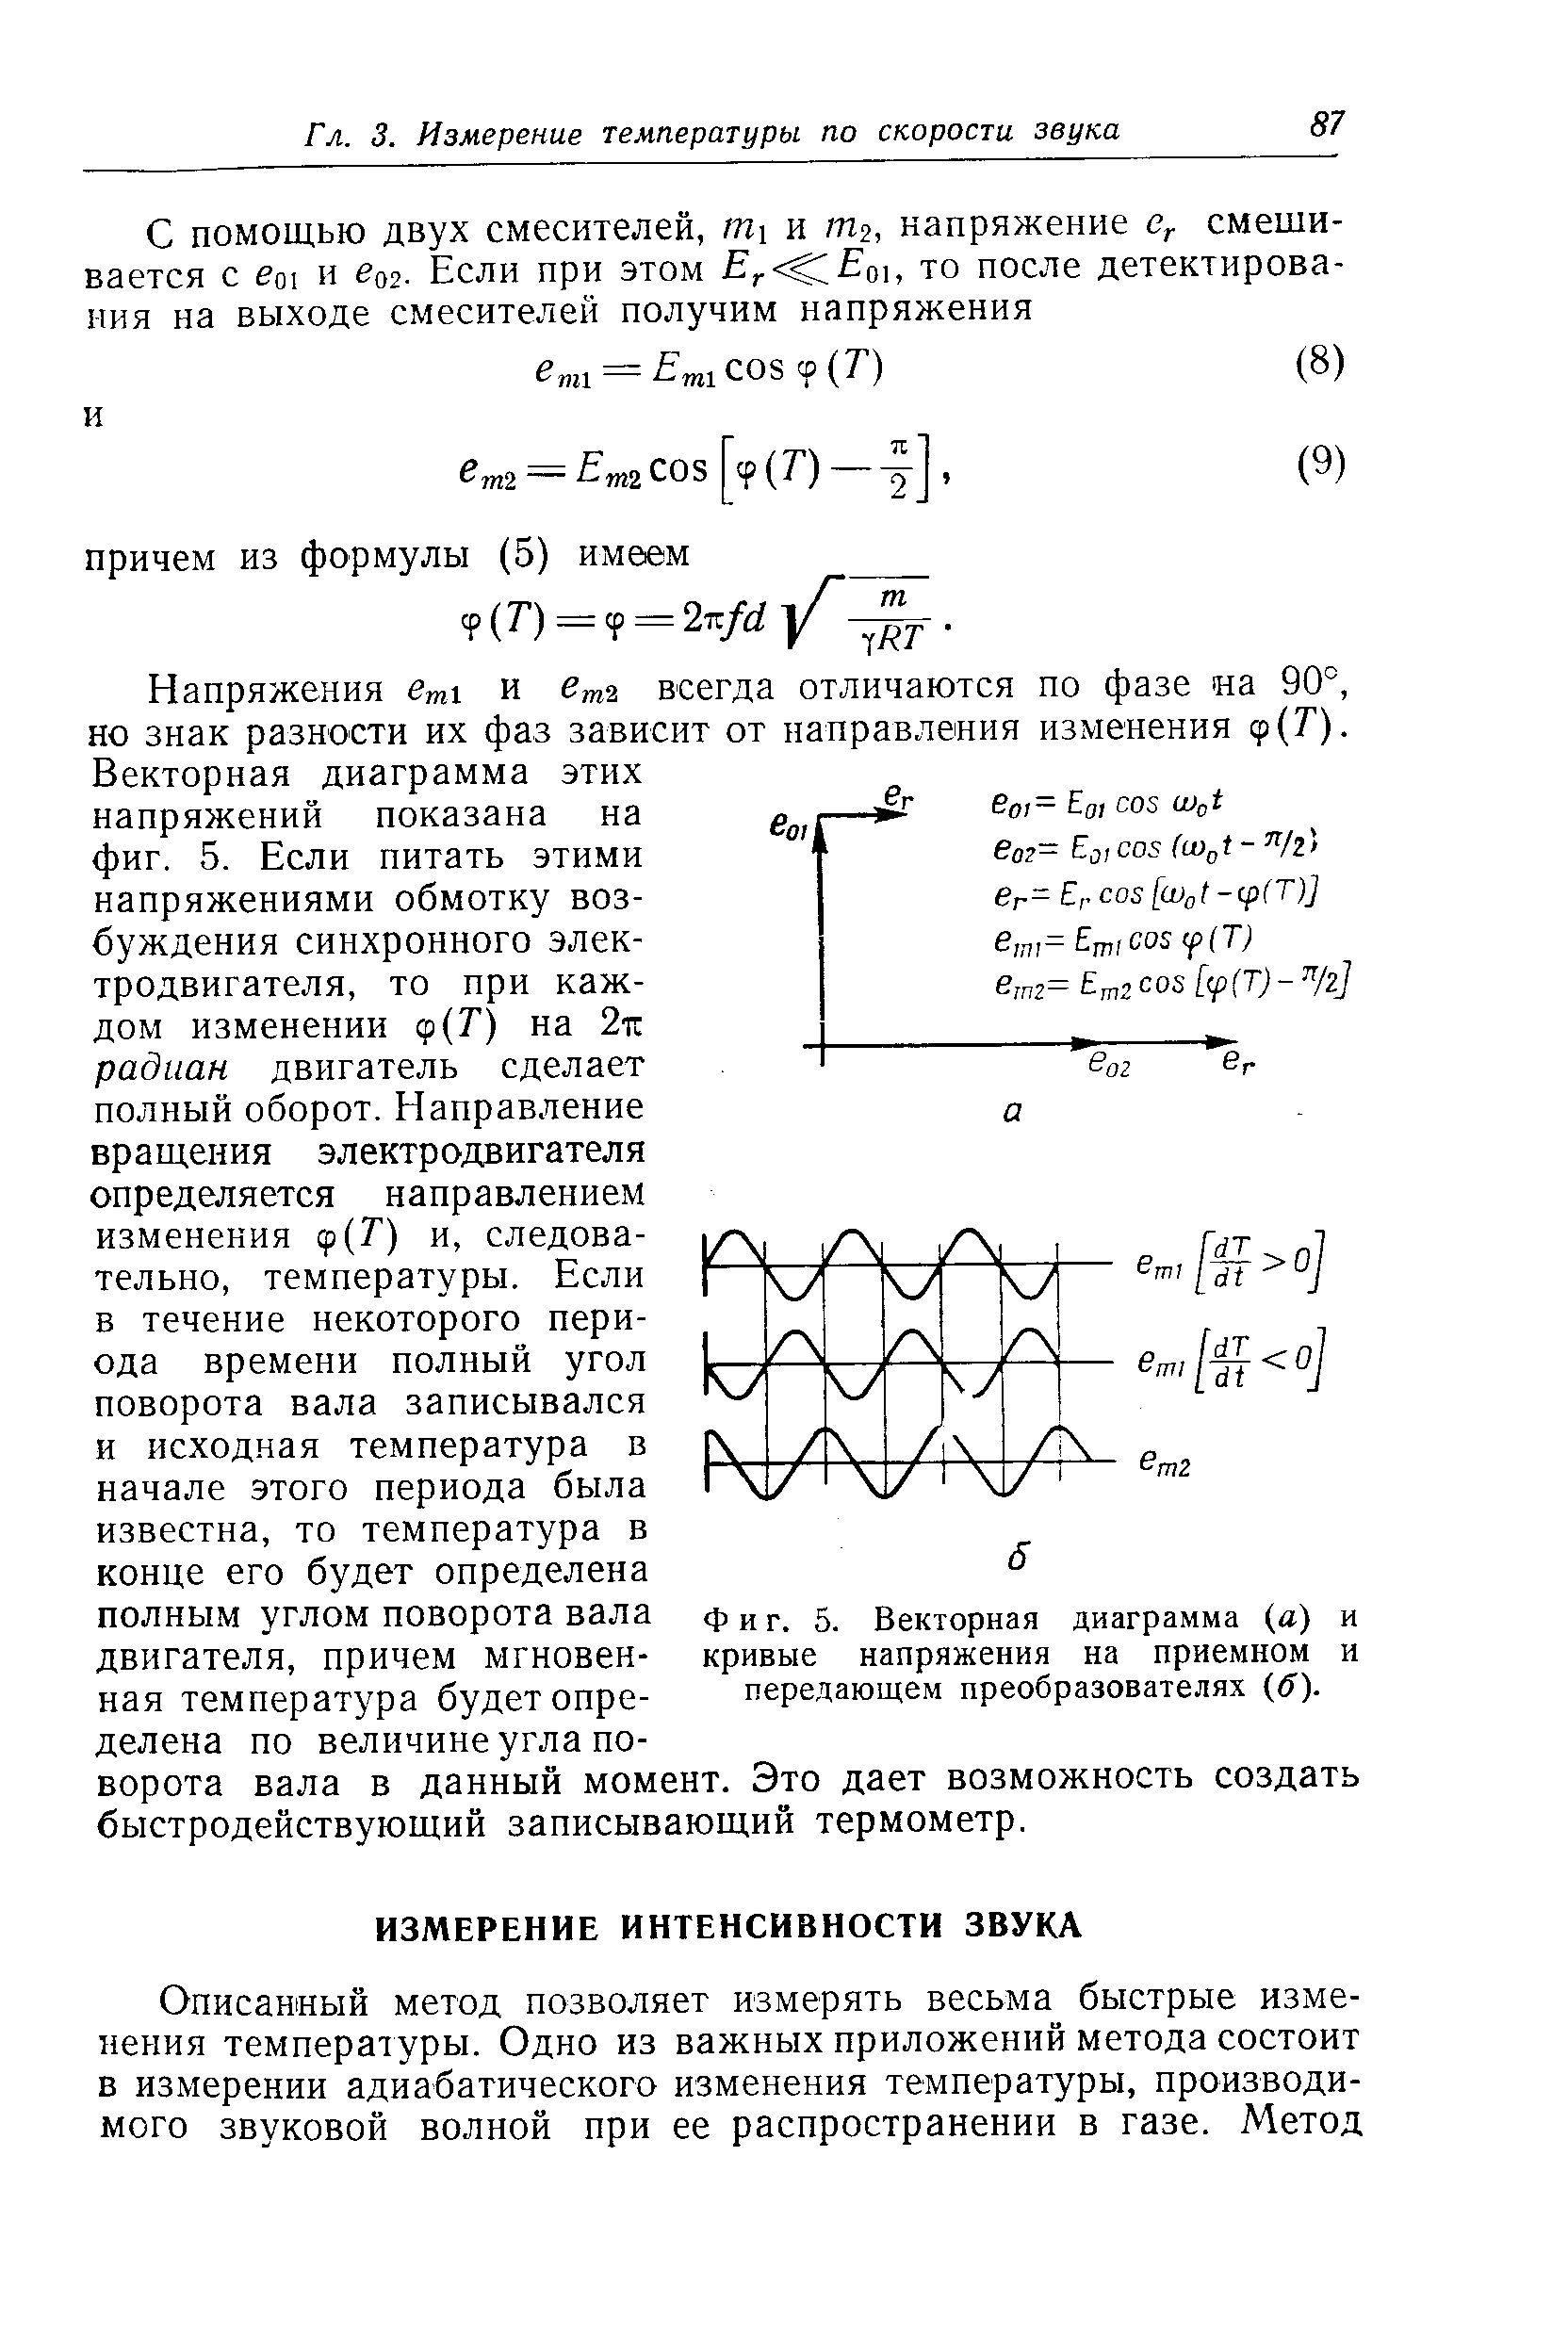 Фиг. 5. <a href="/info/19381">Векторная диаграмма</a> (а) и кривые напряжения на приемном и передающем преобразователях б).
